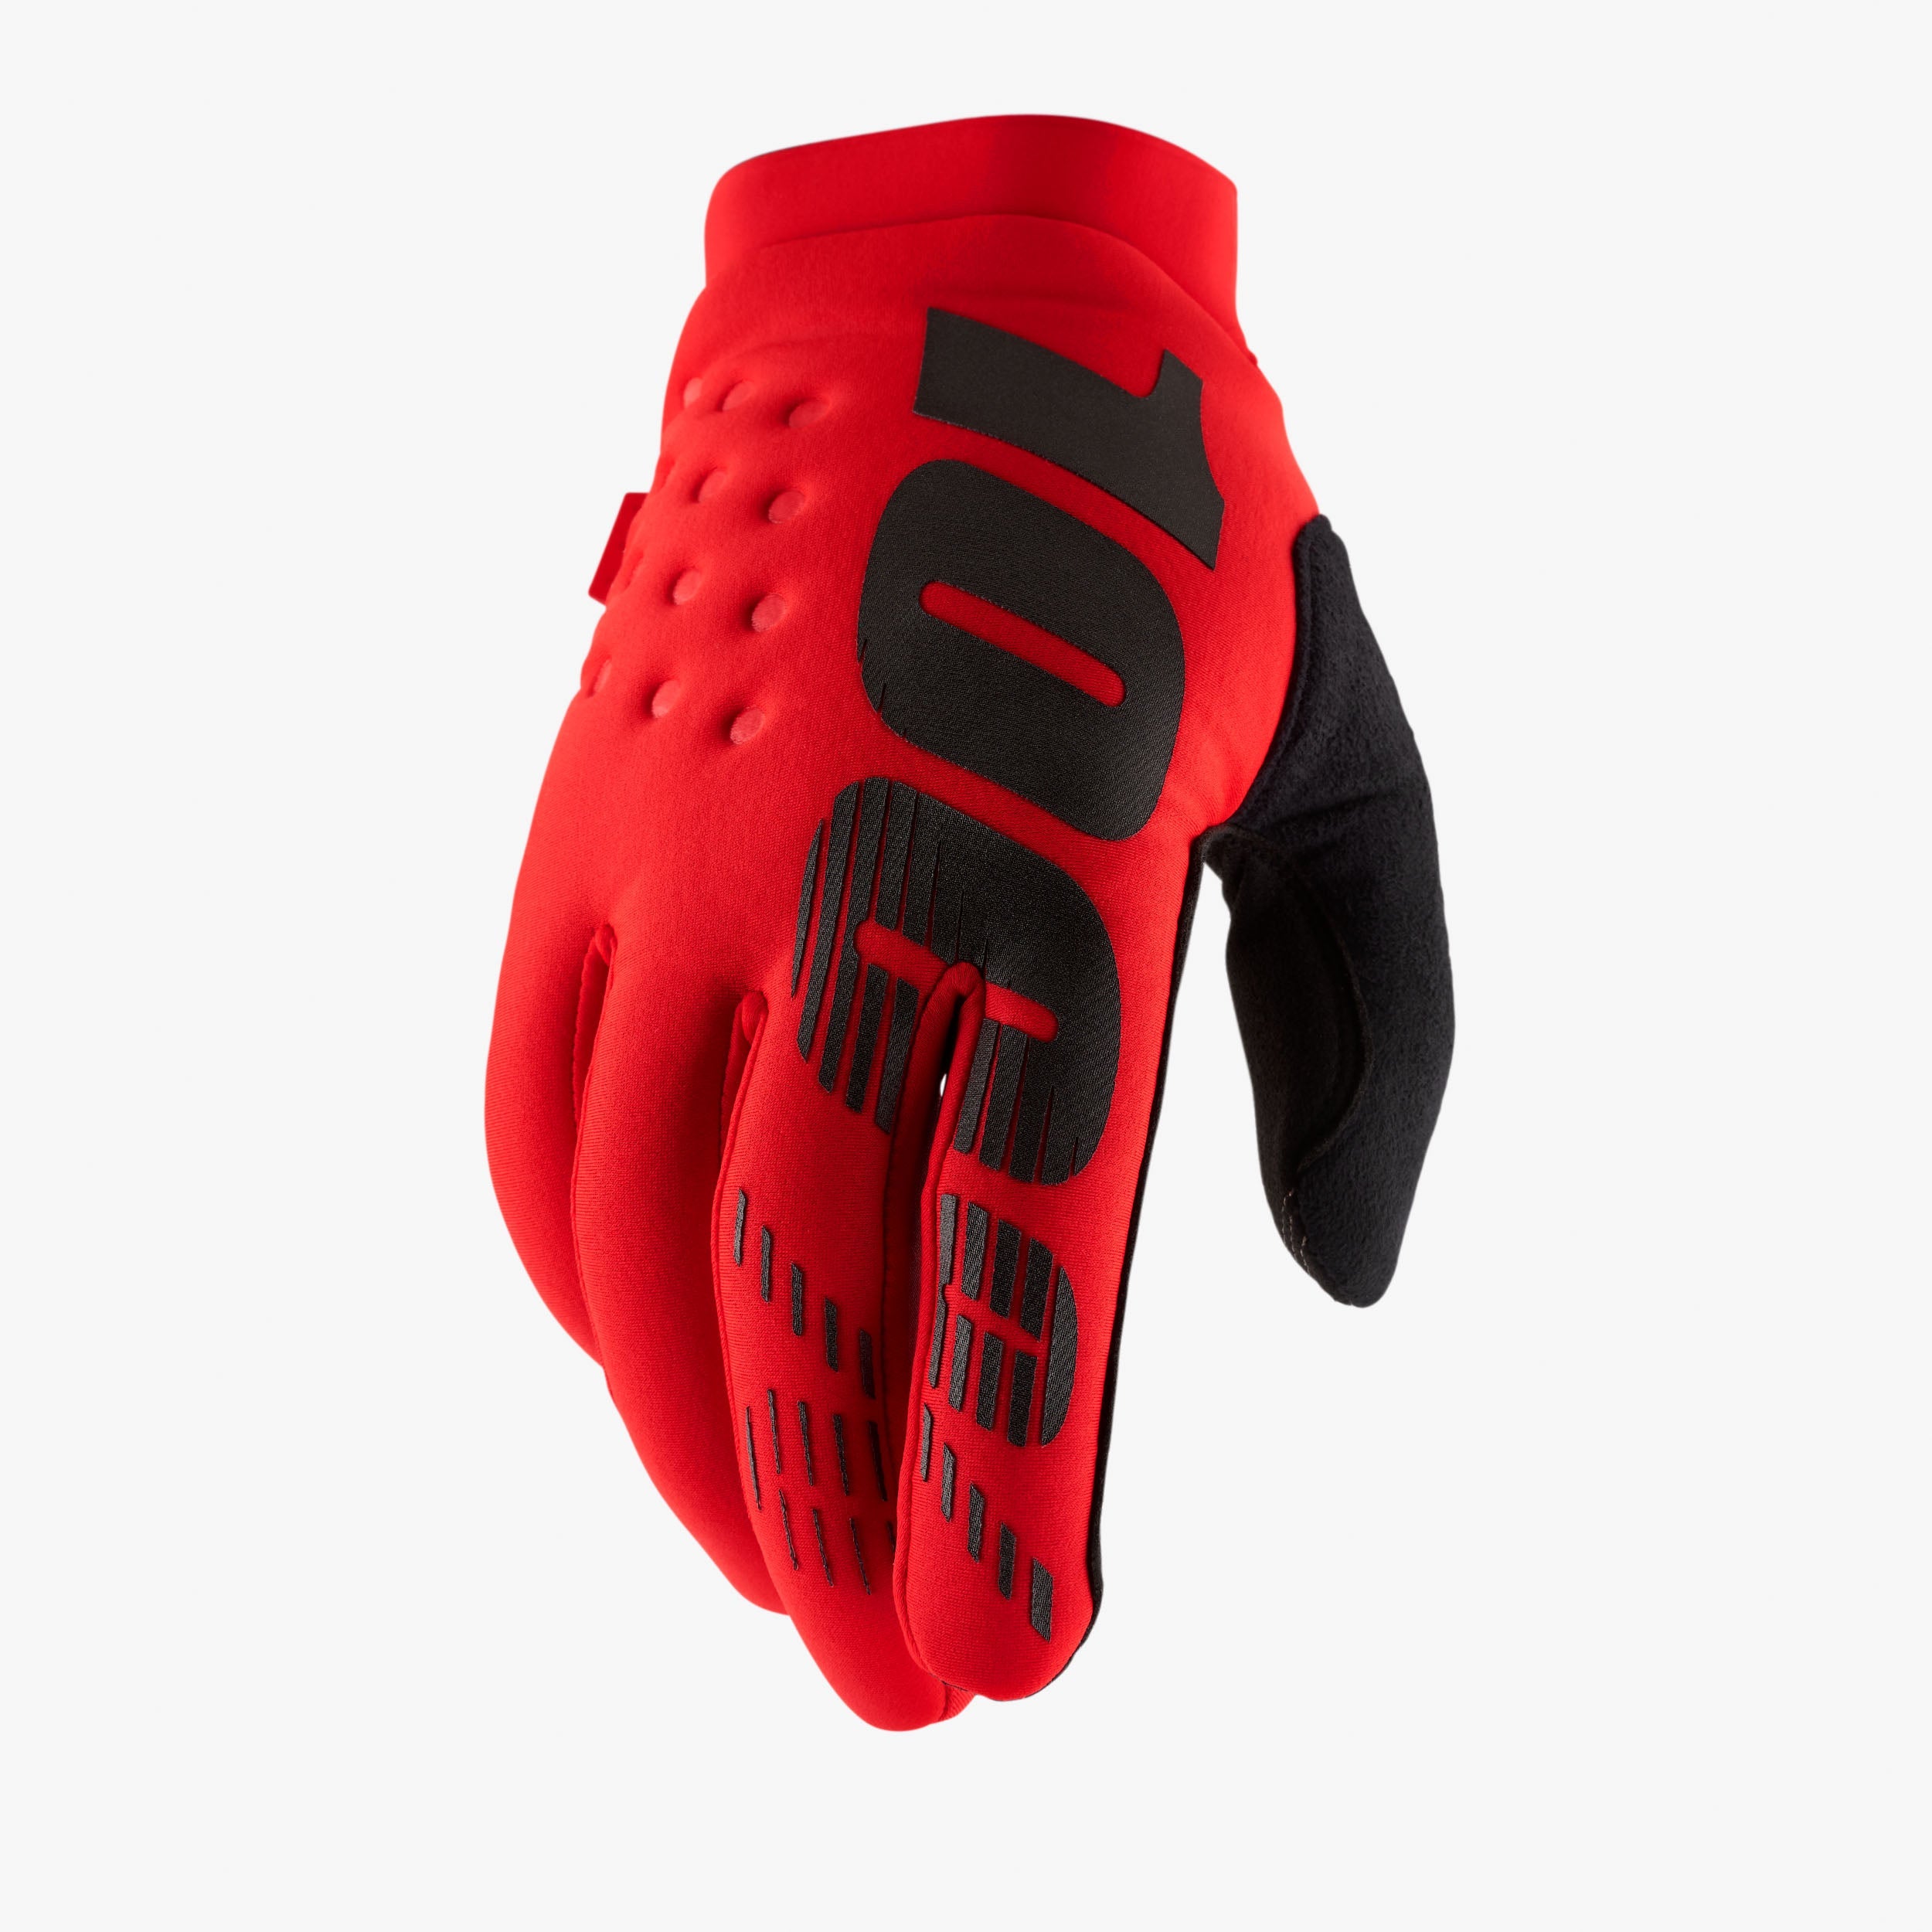 BRISKER Gloves Red